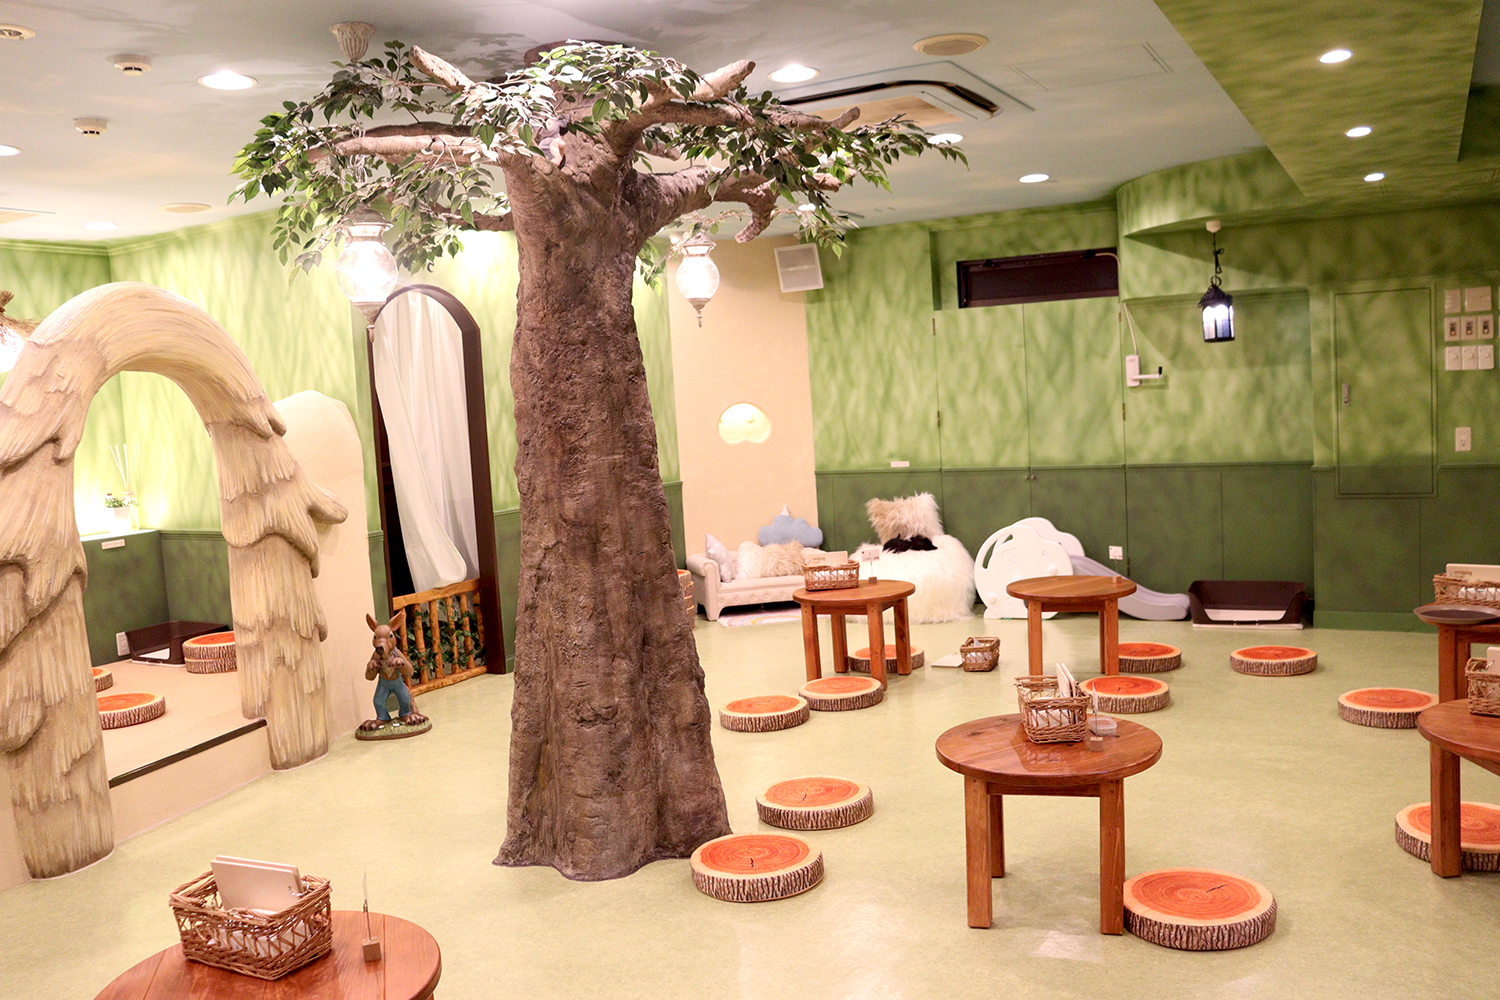 原宿竹下通り裏に話題のマイクロブタカフェ Mipig Cafe 原宿 が11 8 金 オープン 3匹の子ブタをイメージしたメルヘンな店内 Emo Miu エモミュー